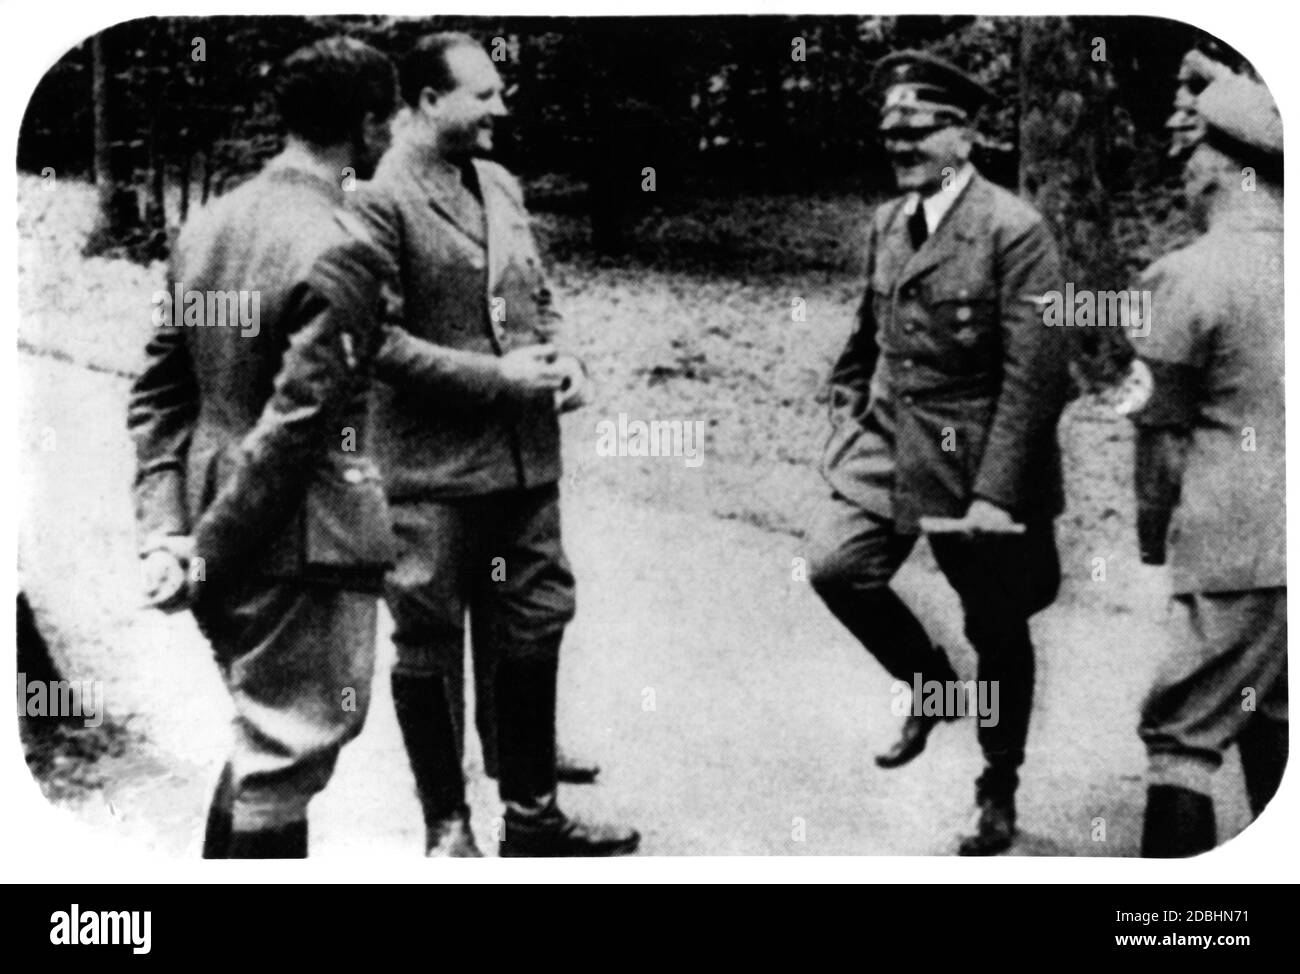 Adolf Hitler scheint nach der französischen Kapitulation in Hochstimmung zu sein. Rechts ist vermutlich Hermann Göring in Zivilkleidung zu sehen. Stockfoto